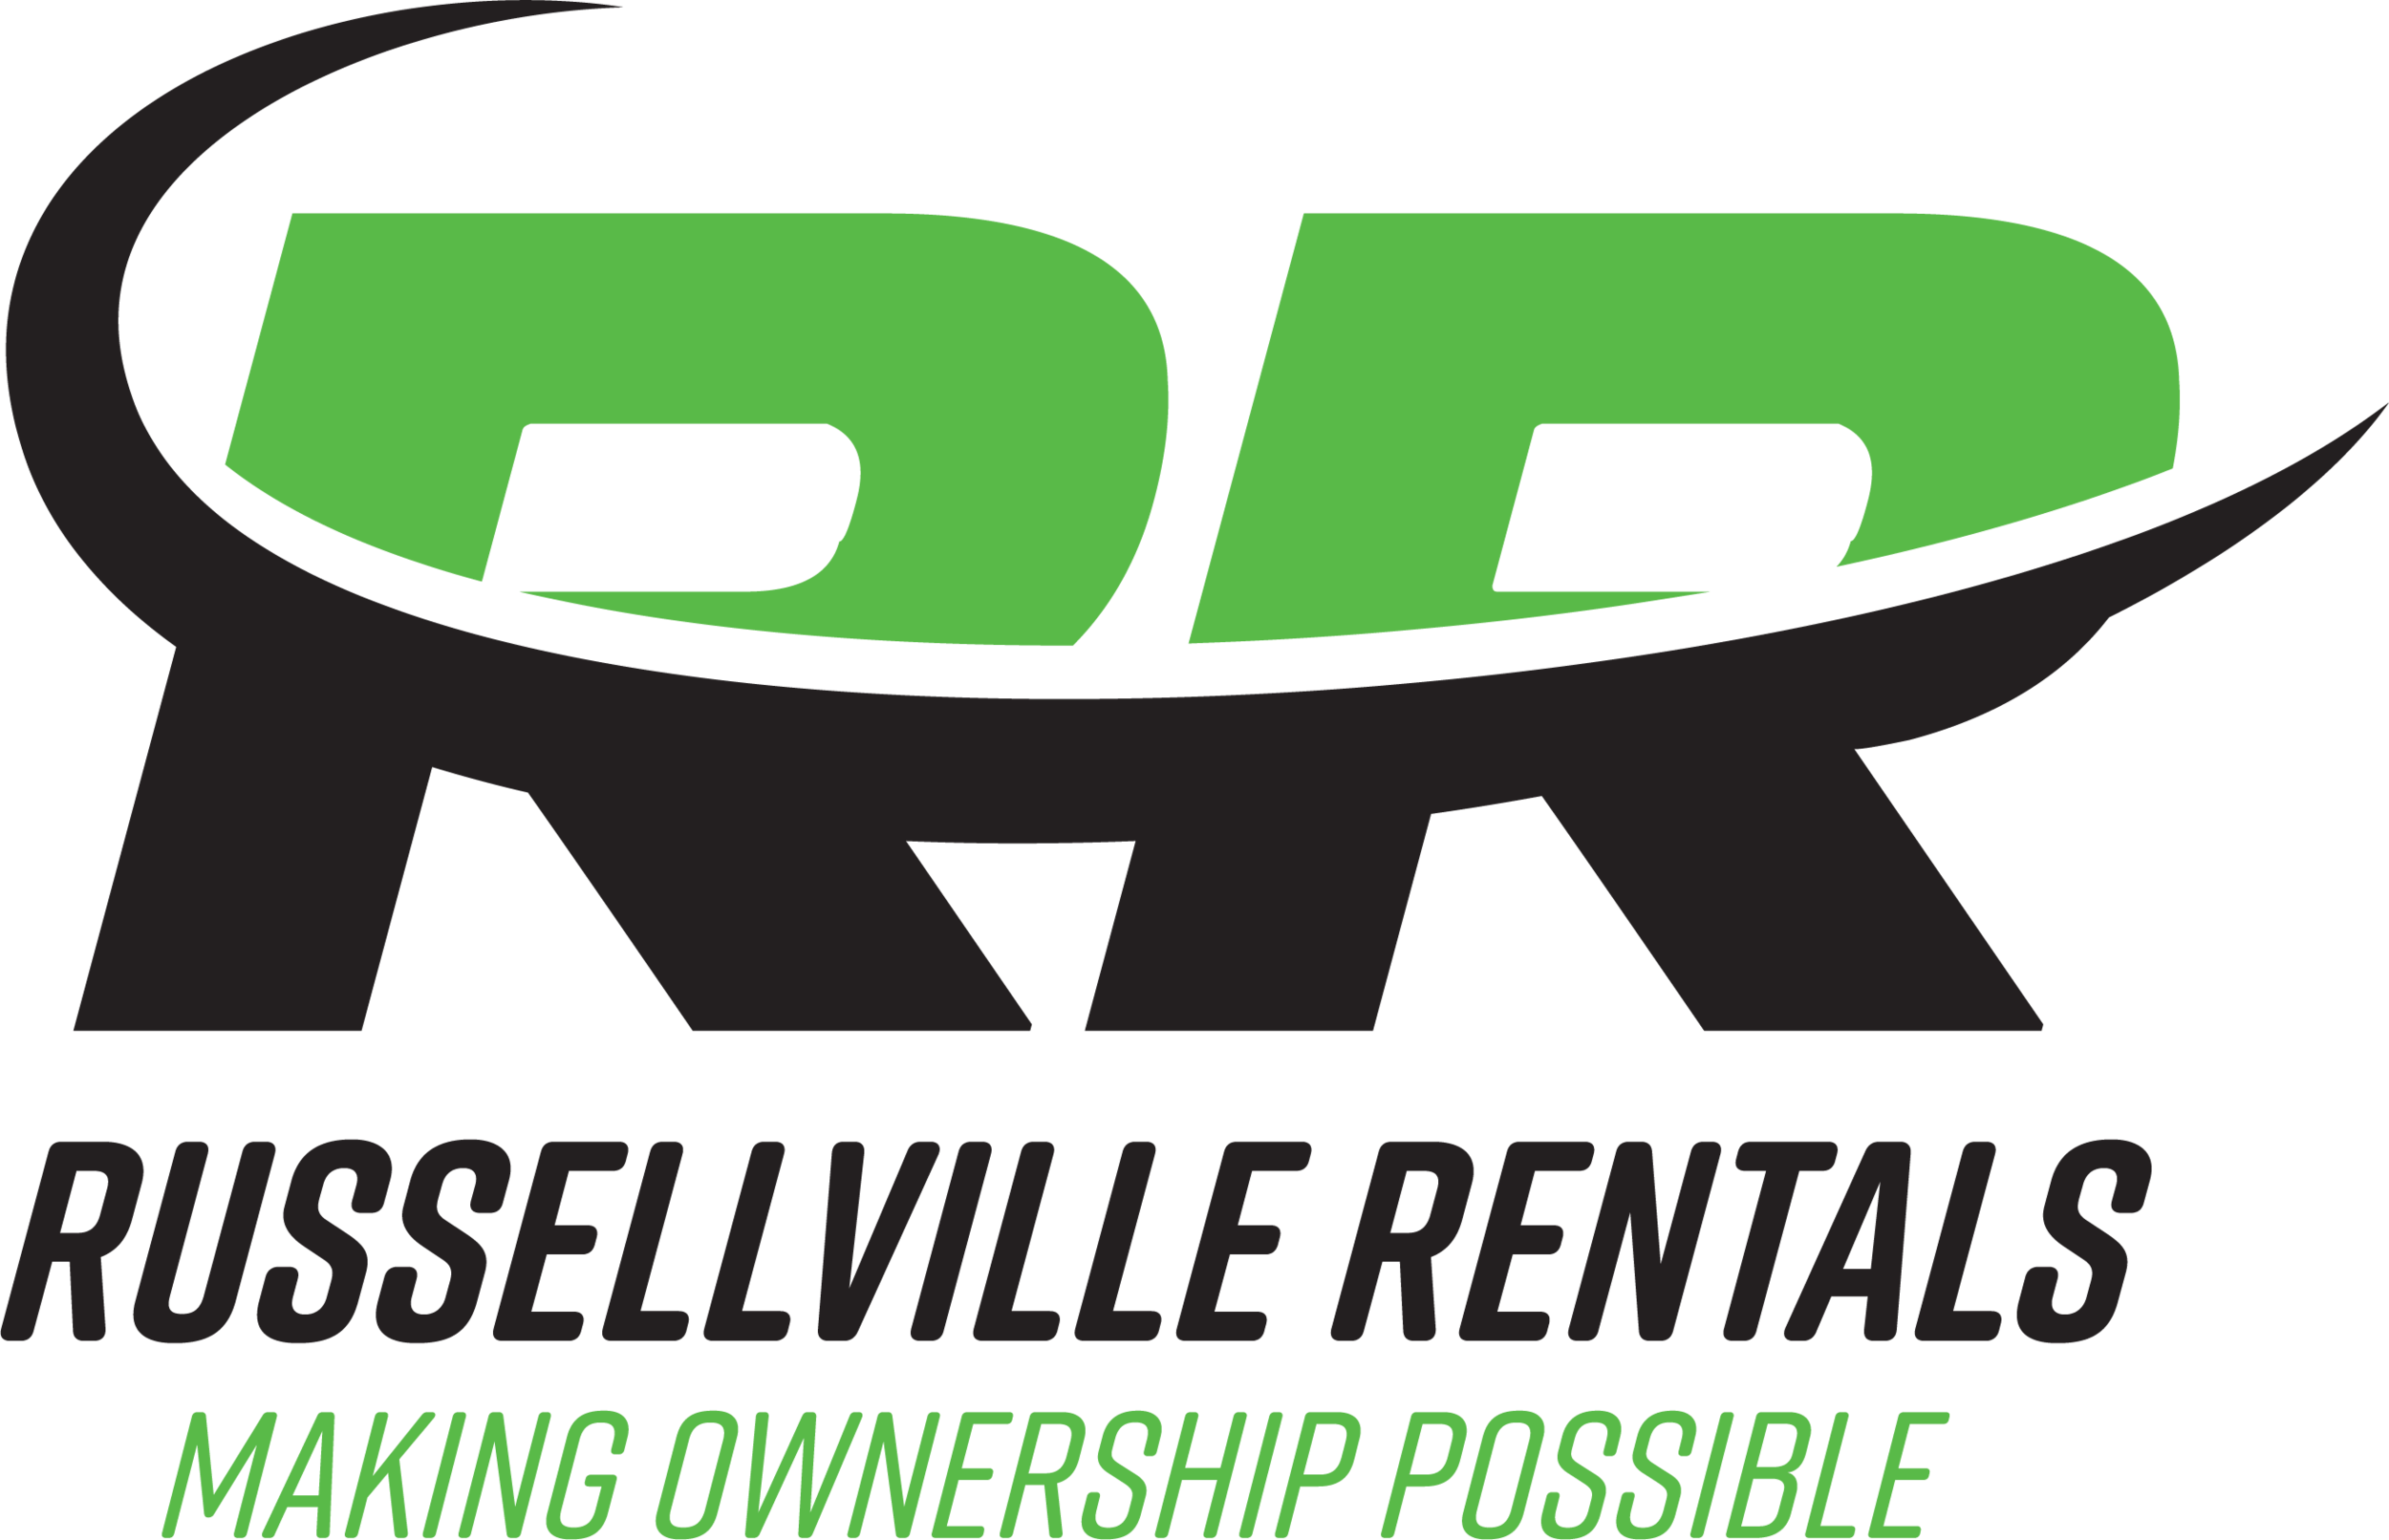 Russellville Rentals LLC